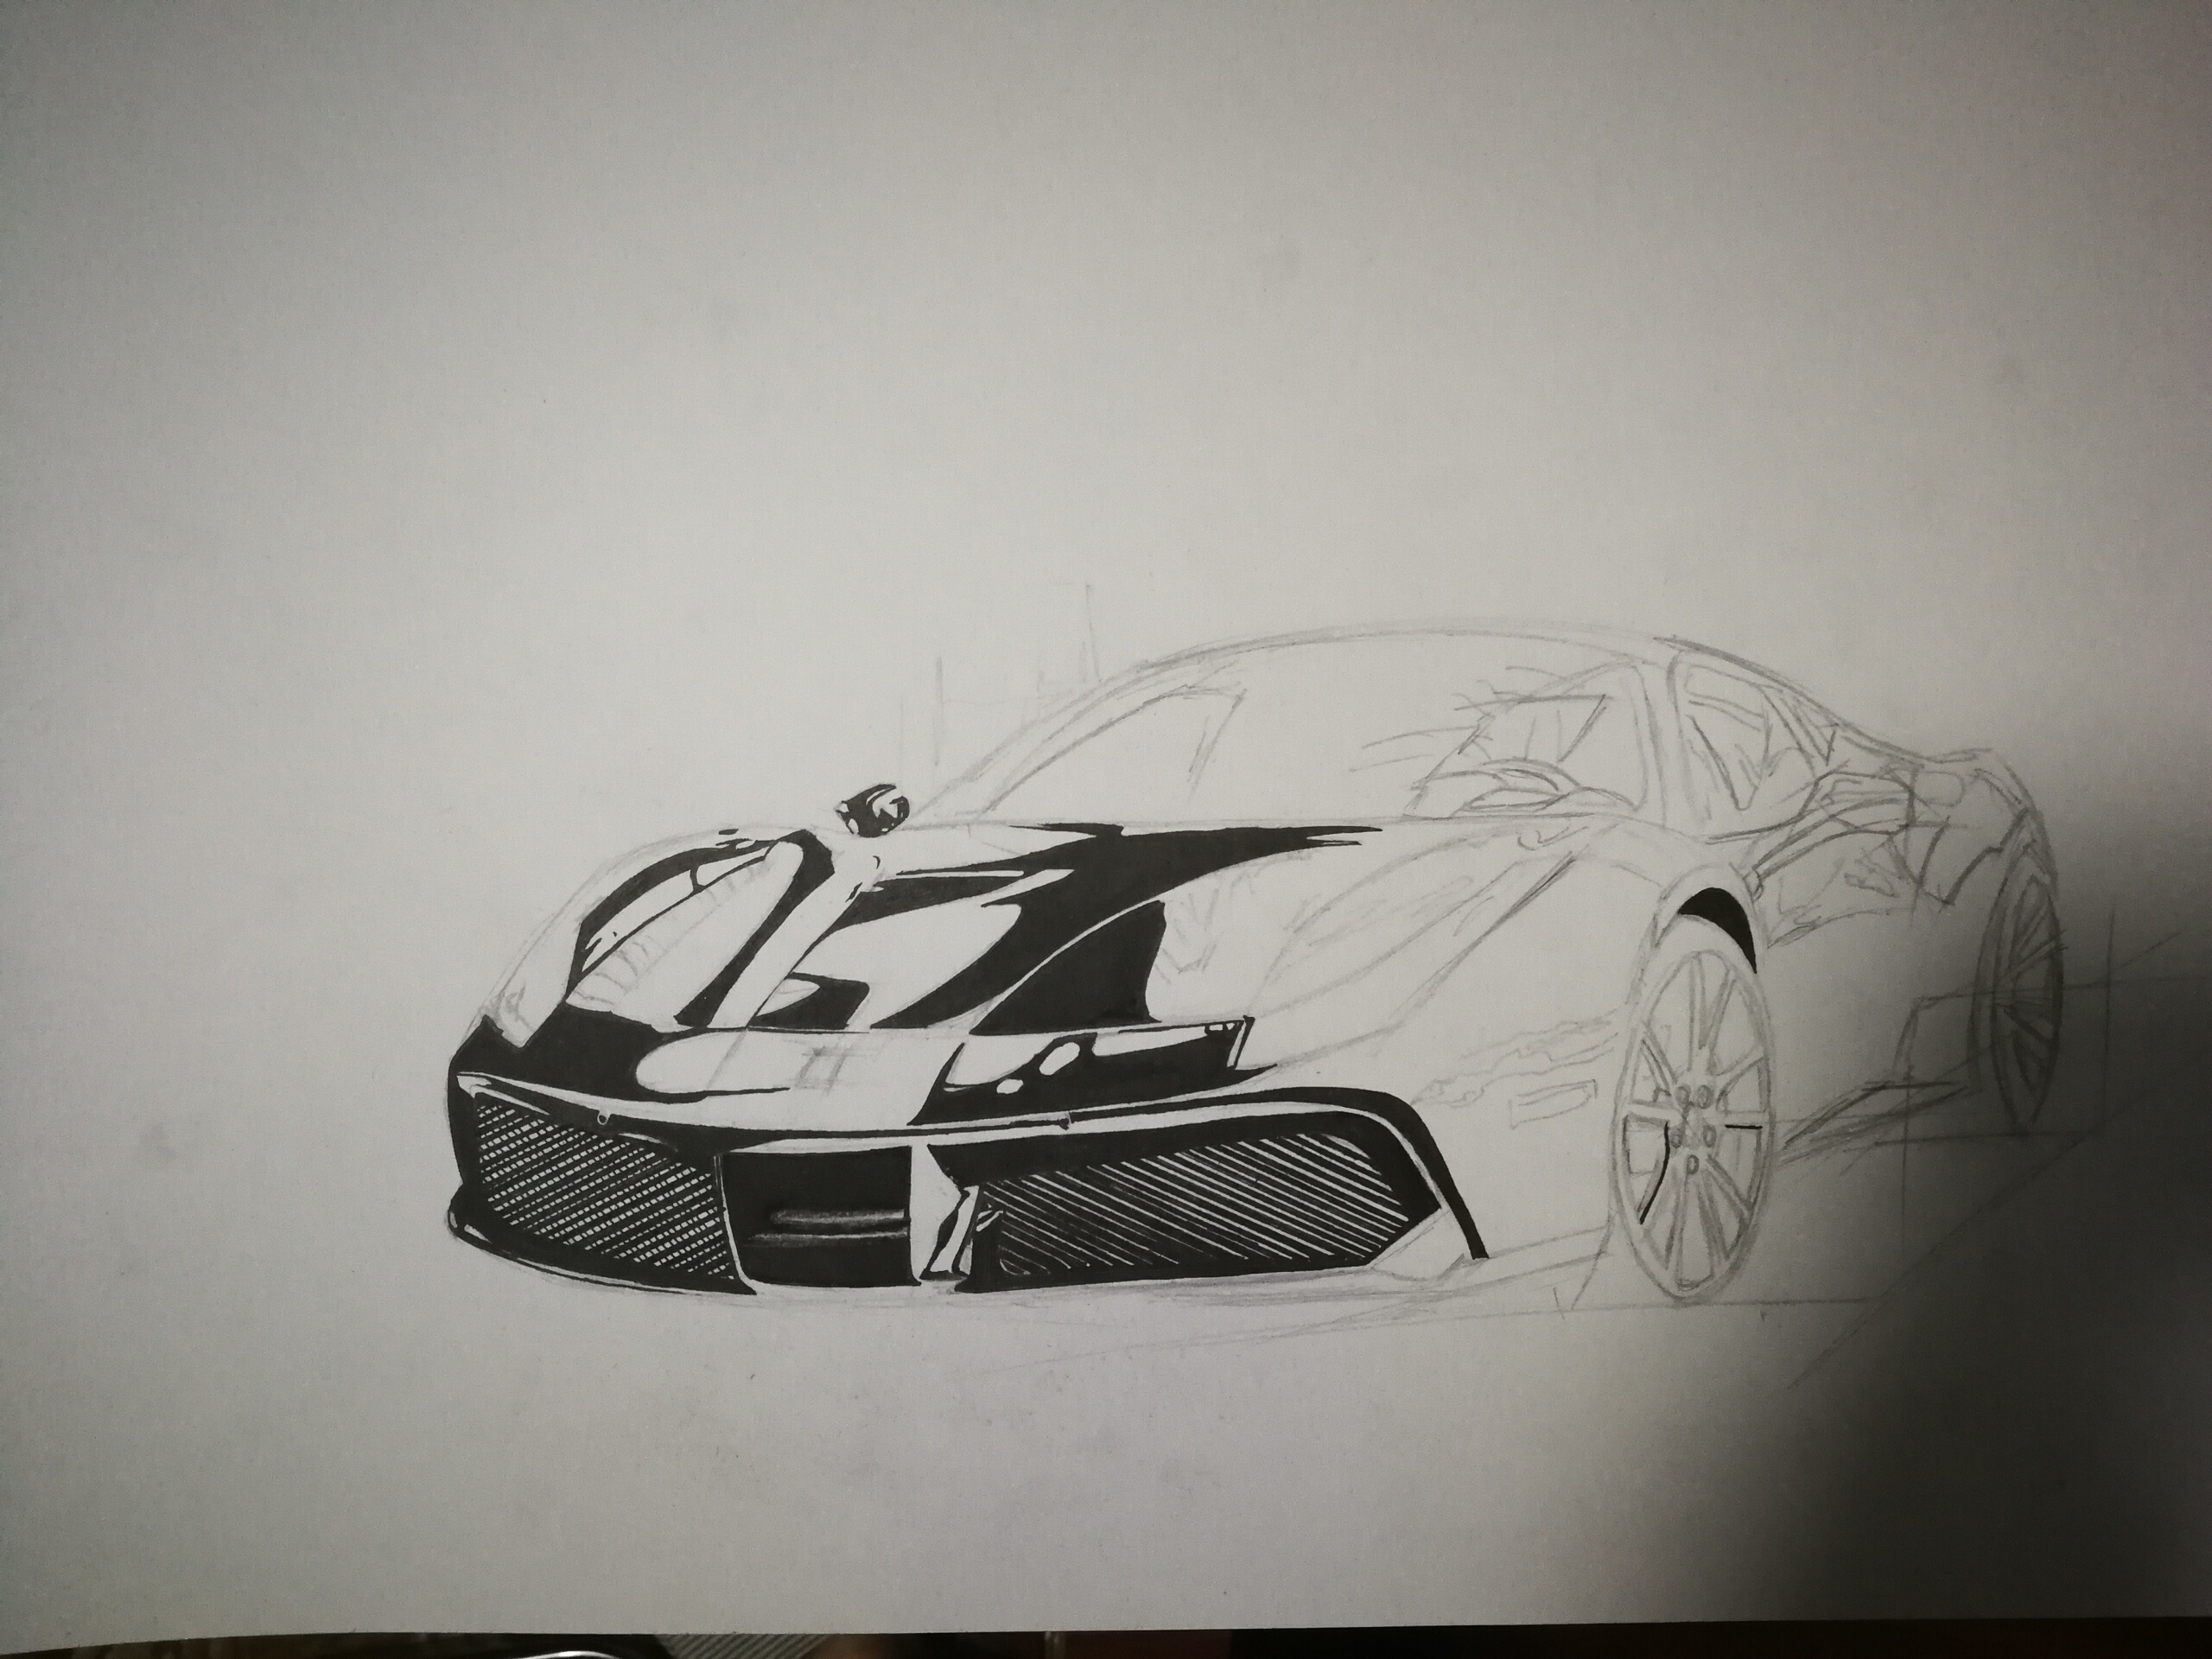 法拉利赛车素描画图片